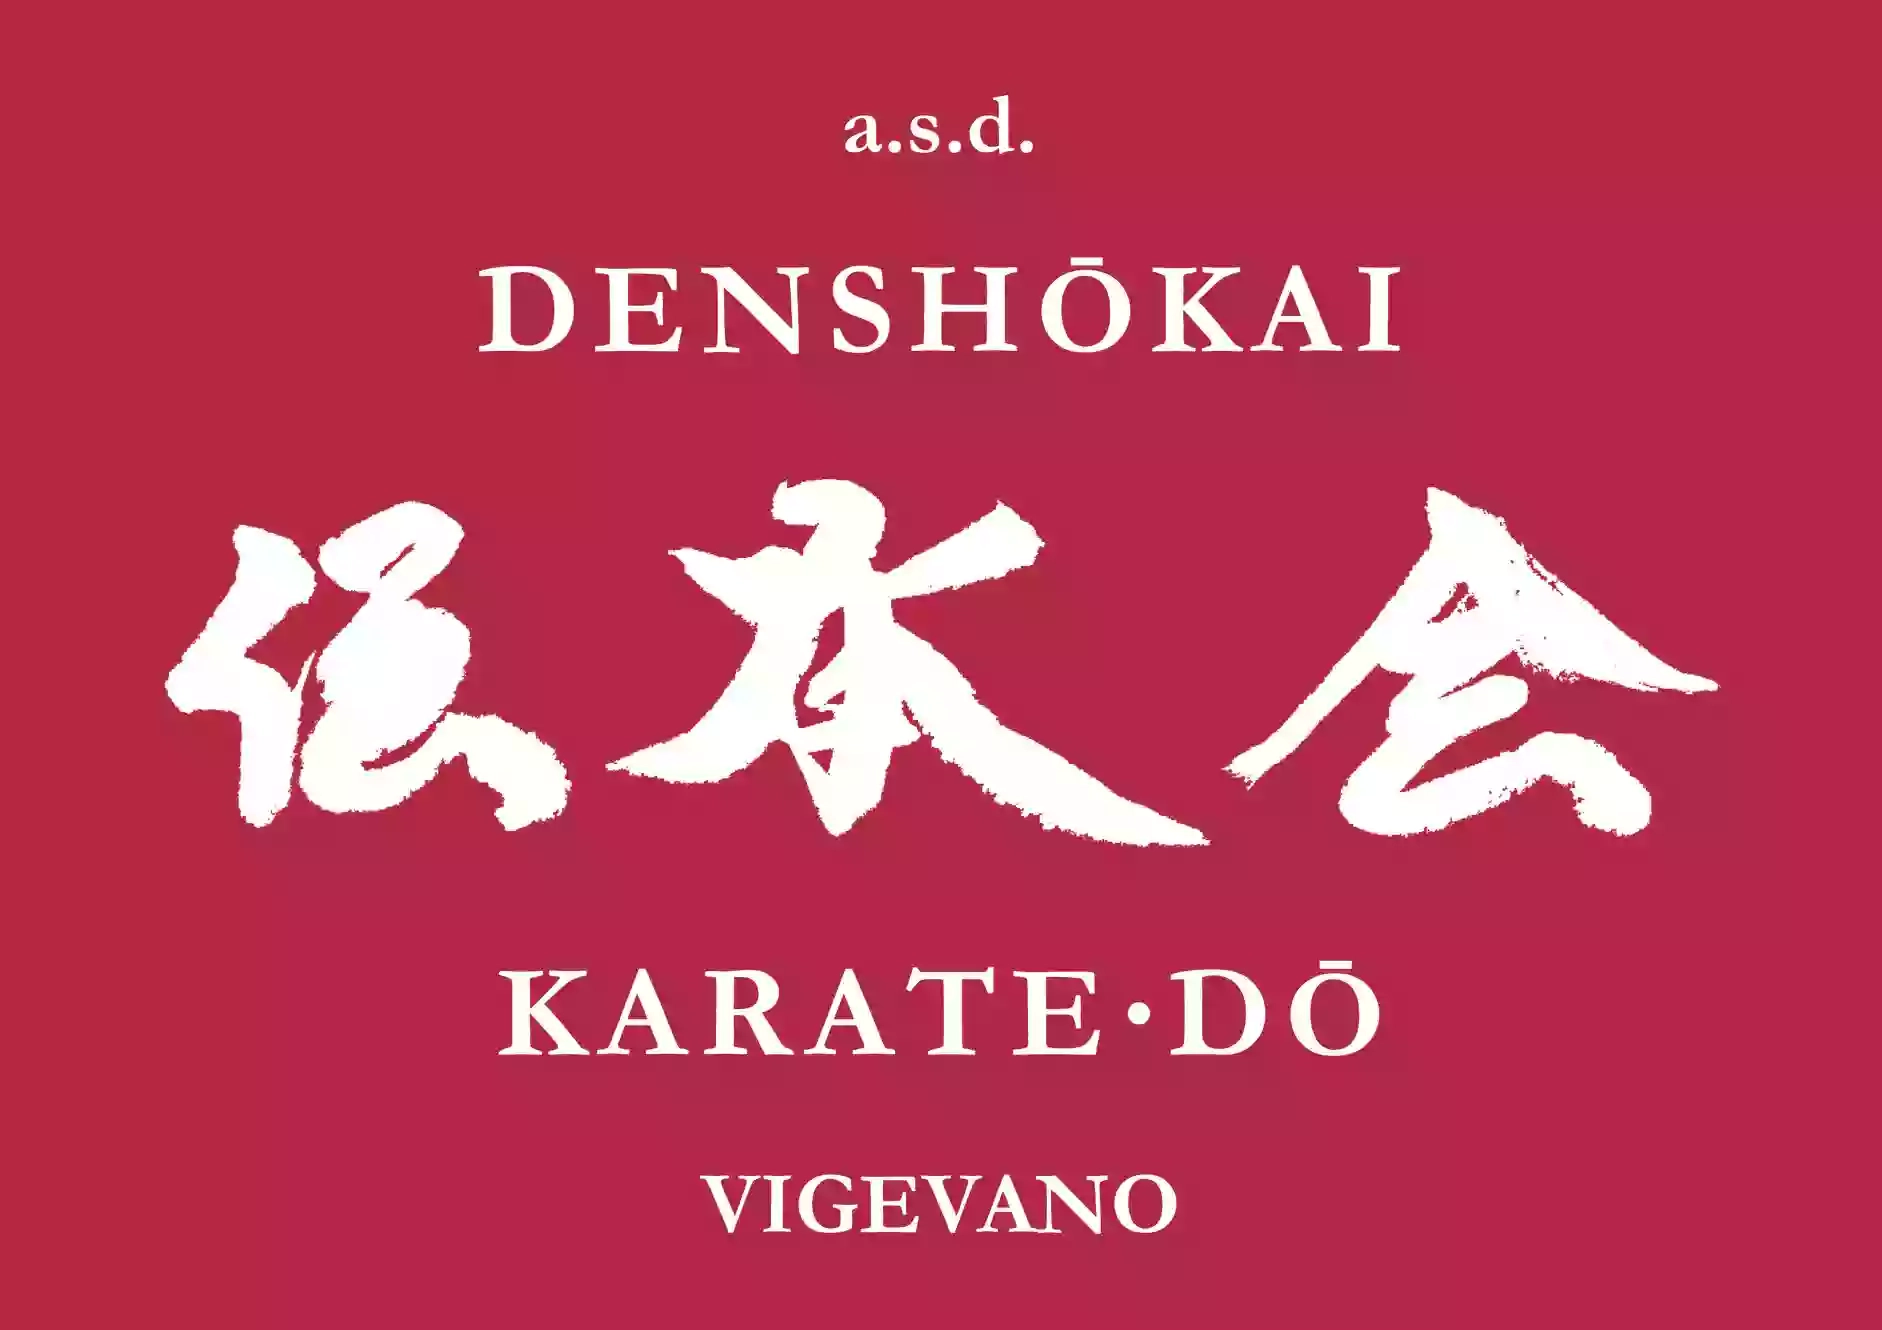 ASD Denshokai Karate-do